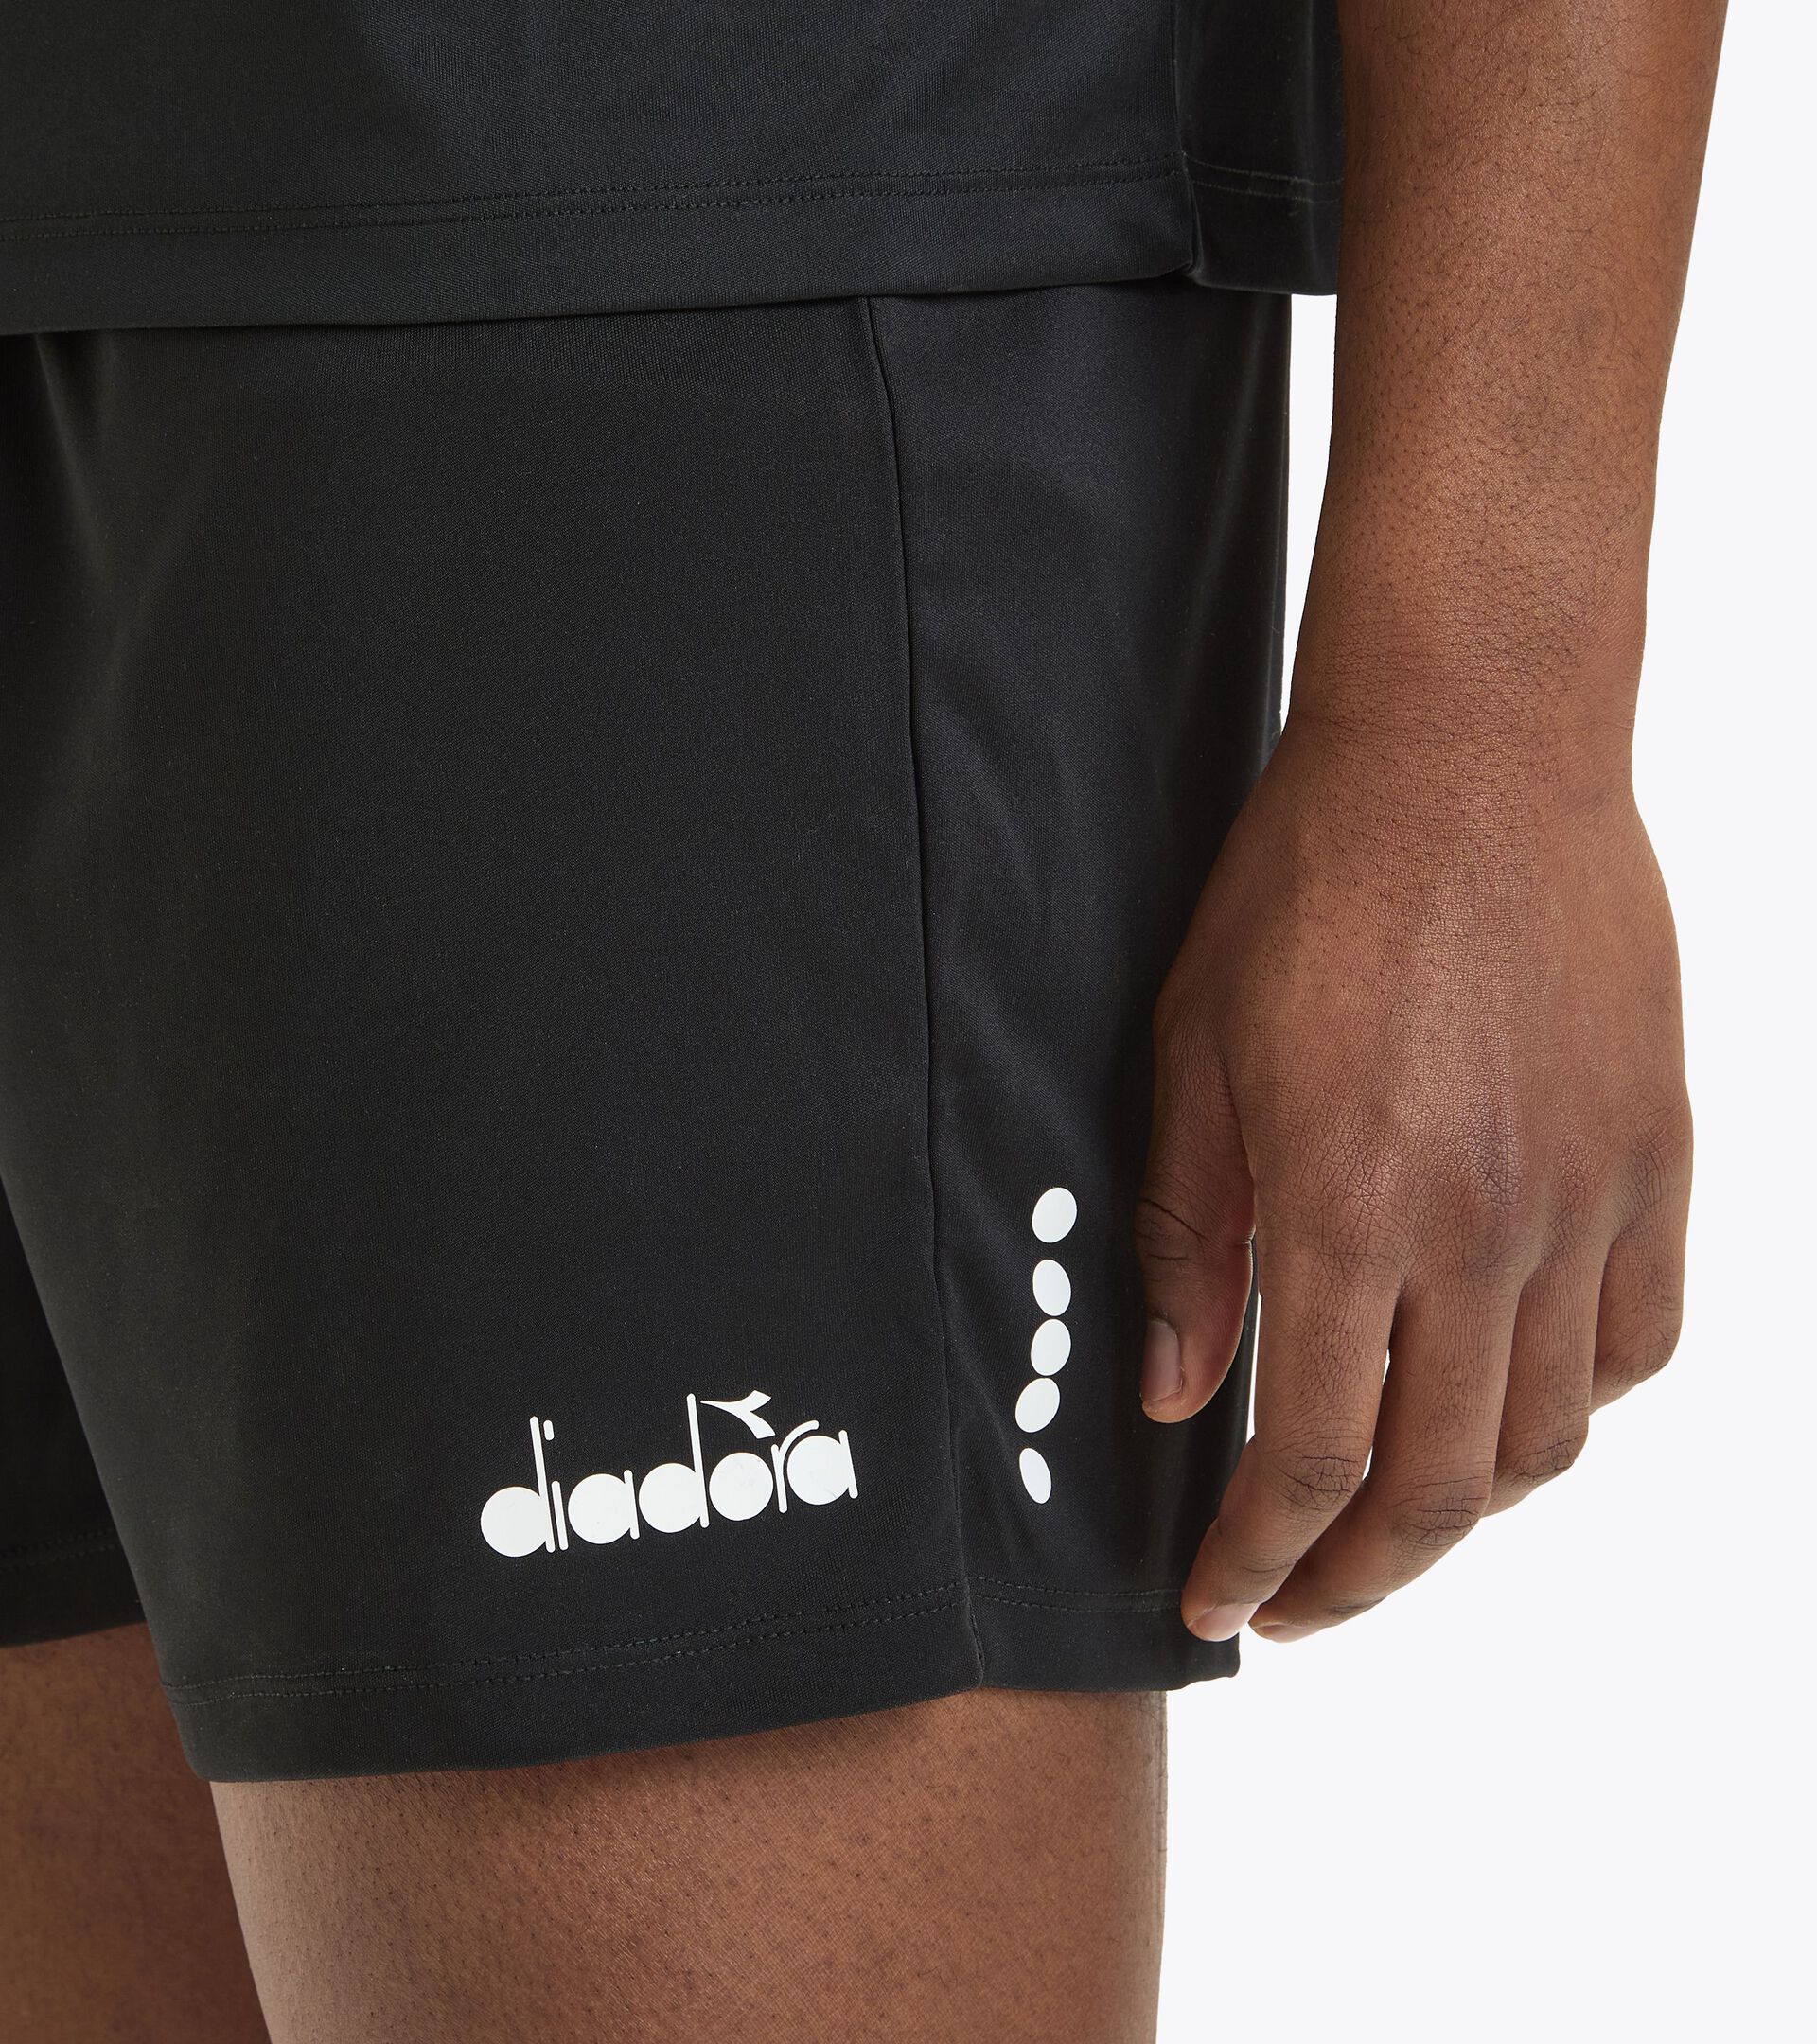 Calcio bermuda shorts - Men’s MATCH SHORT SCUDETTO BLACK - Diadora